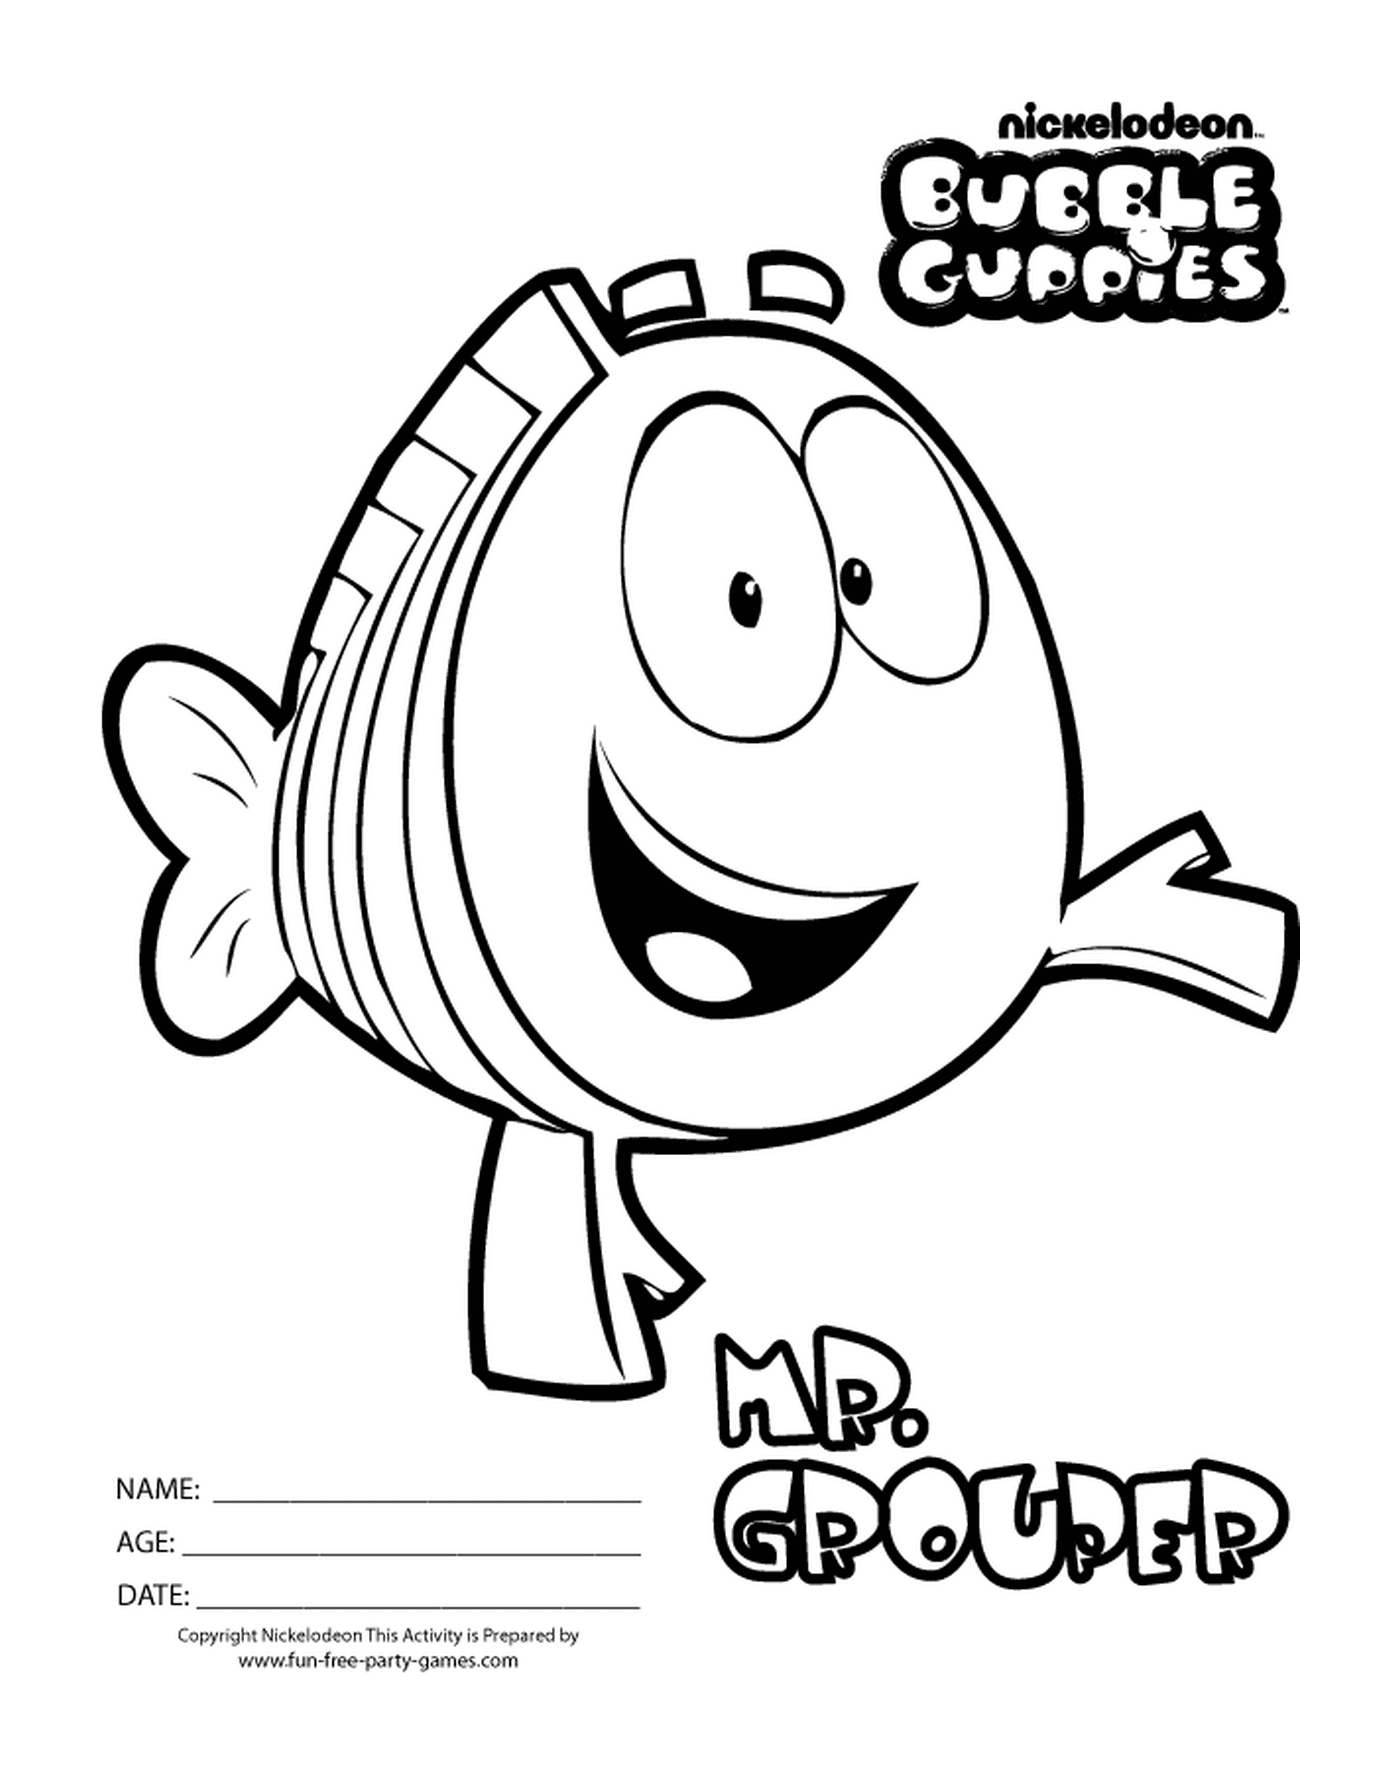  Grouper des Bubble Guppies, un pesce animato 